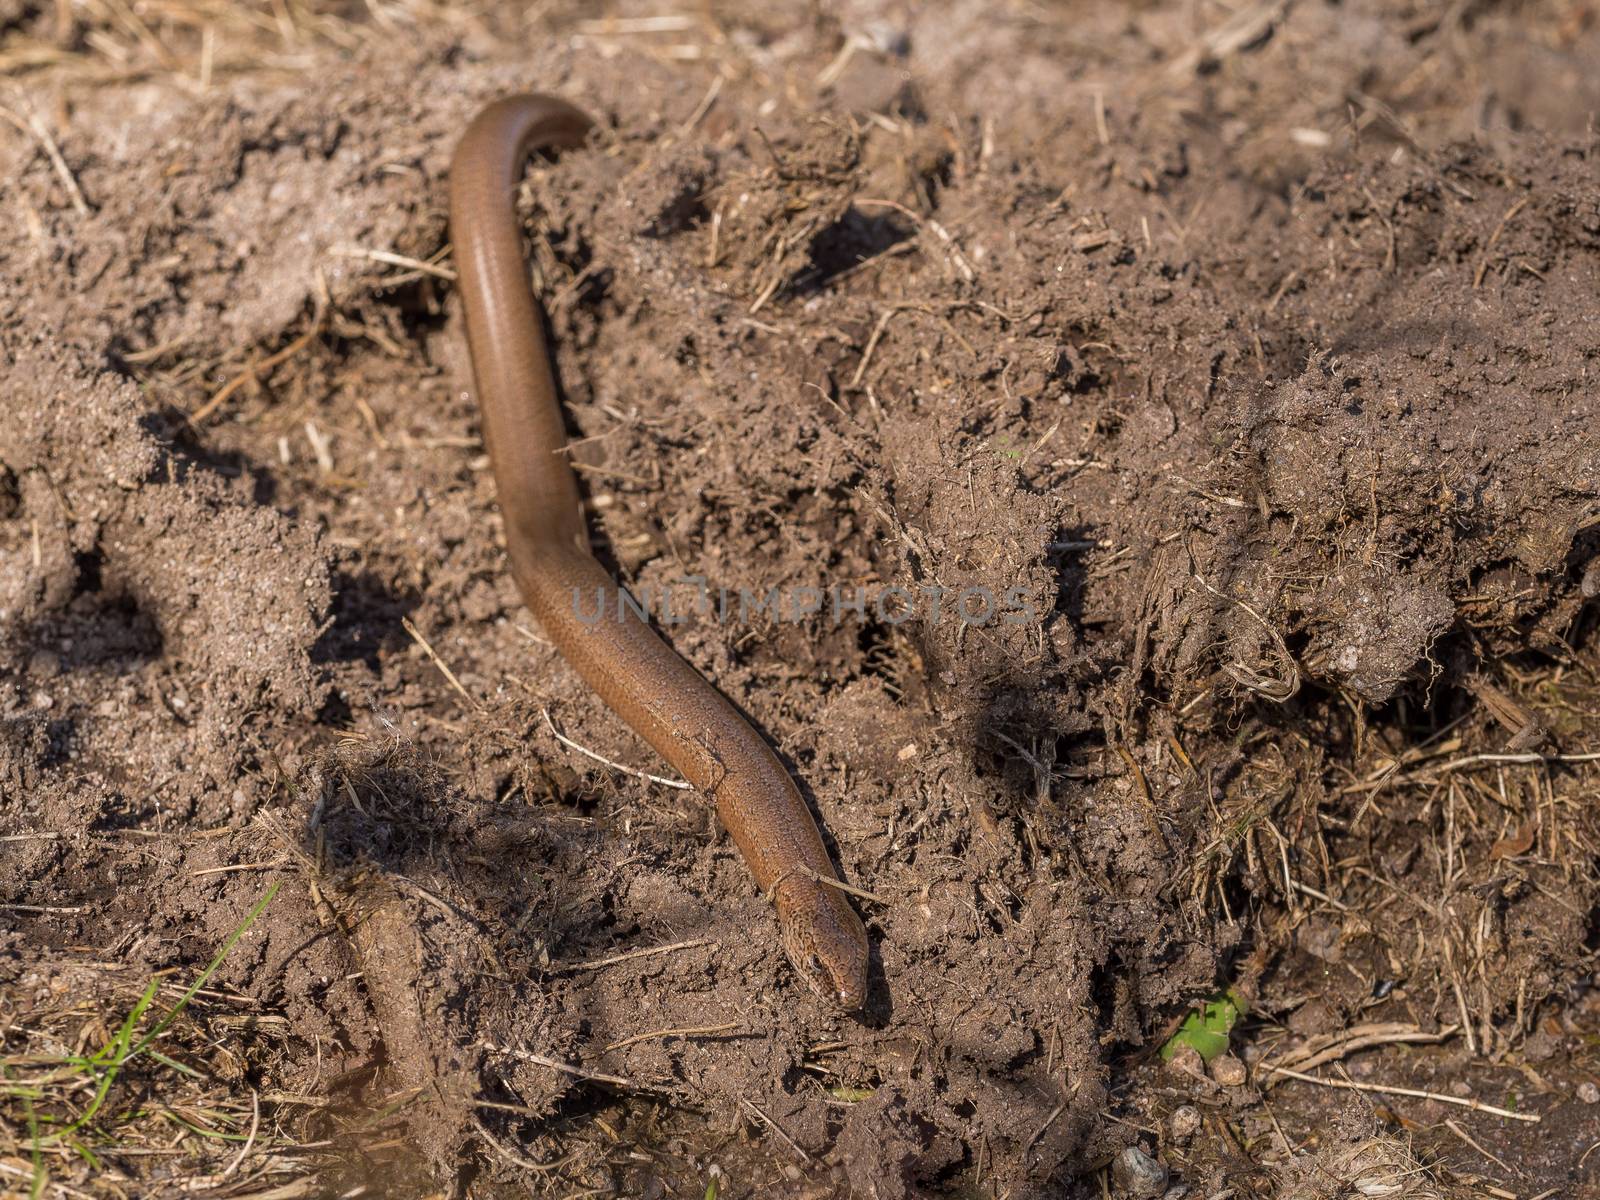 Slowworm on a brown soil by frankhoekzema